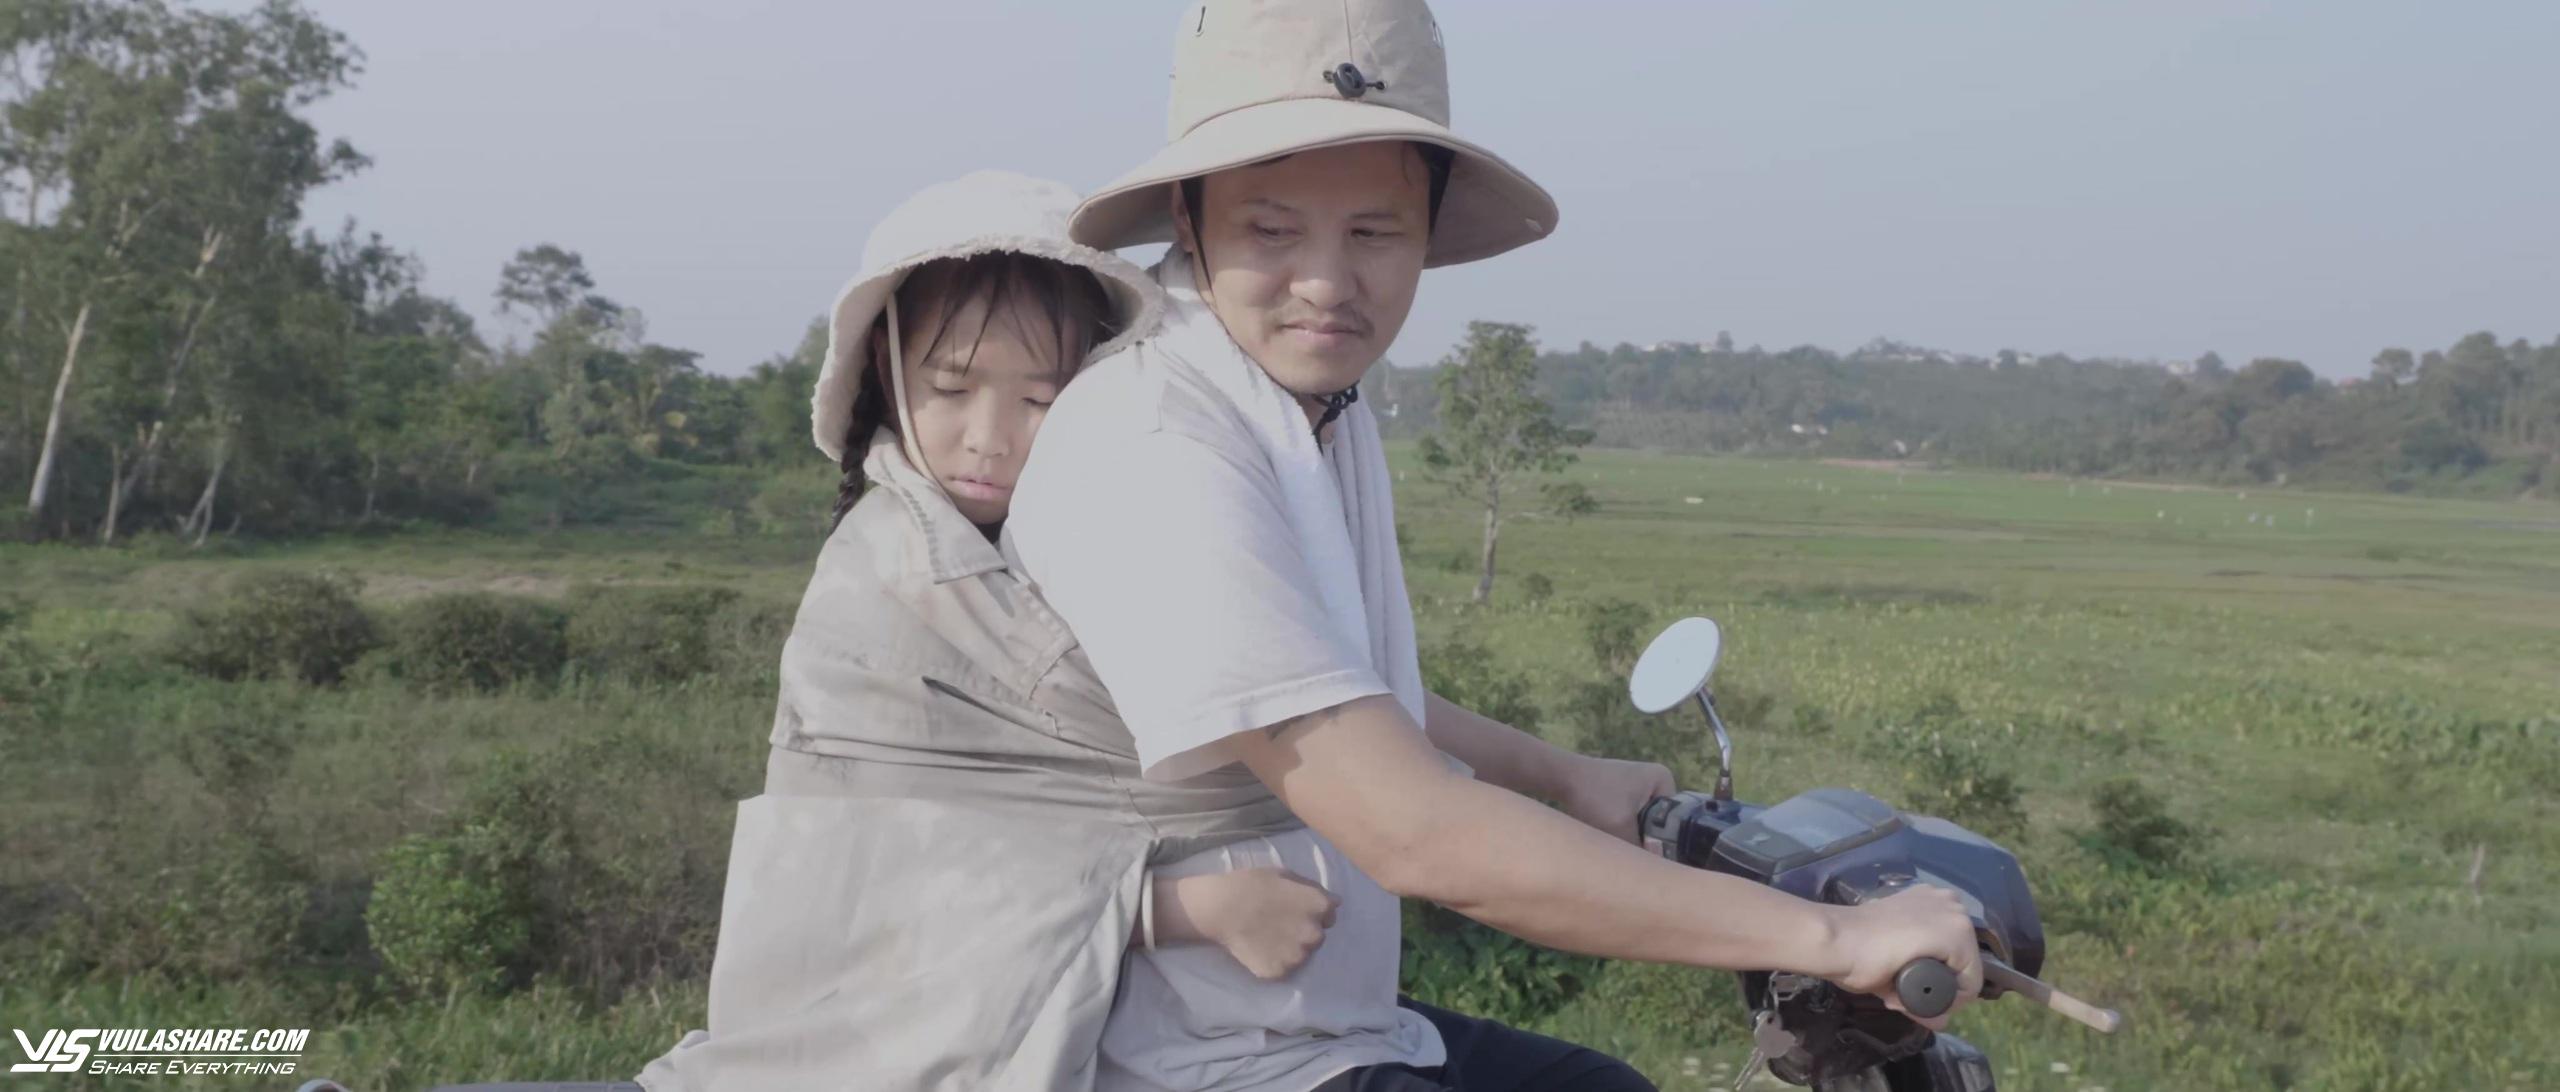 Diễn viên Hồ Quang Mẫn hóa người cha khắc khổ trong phim 'Những giấc mơ tuyệt vời'- Ảnh 3.